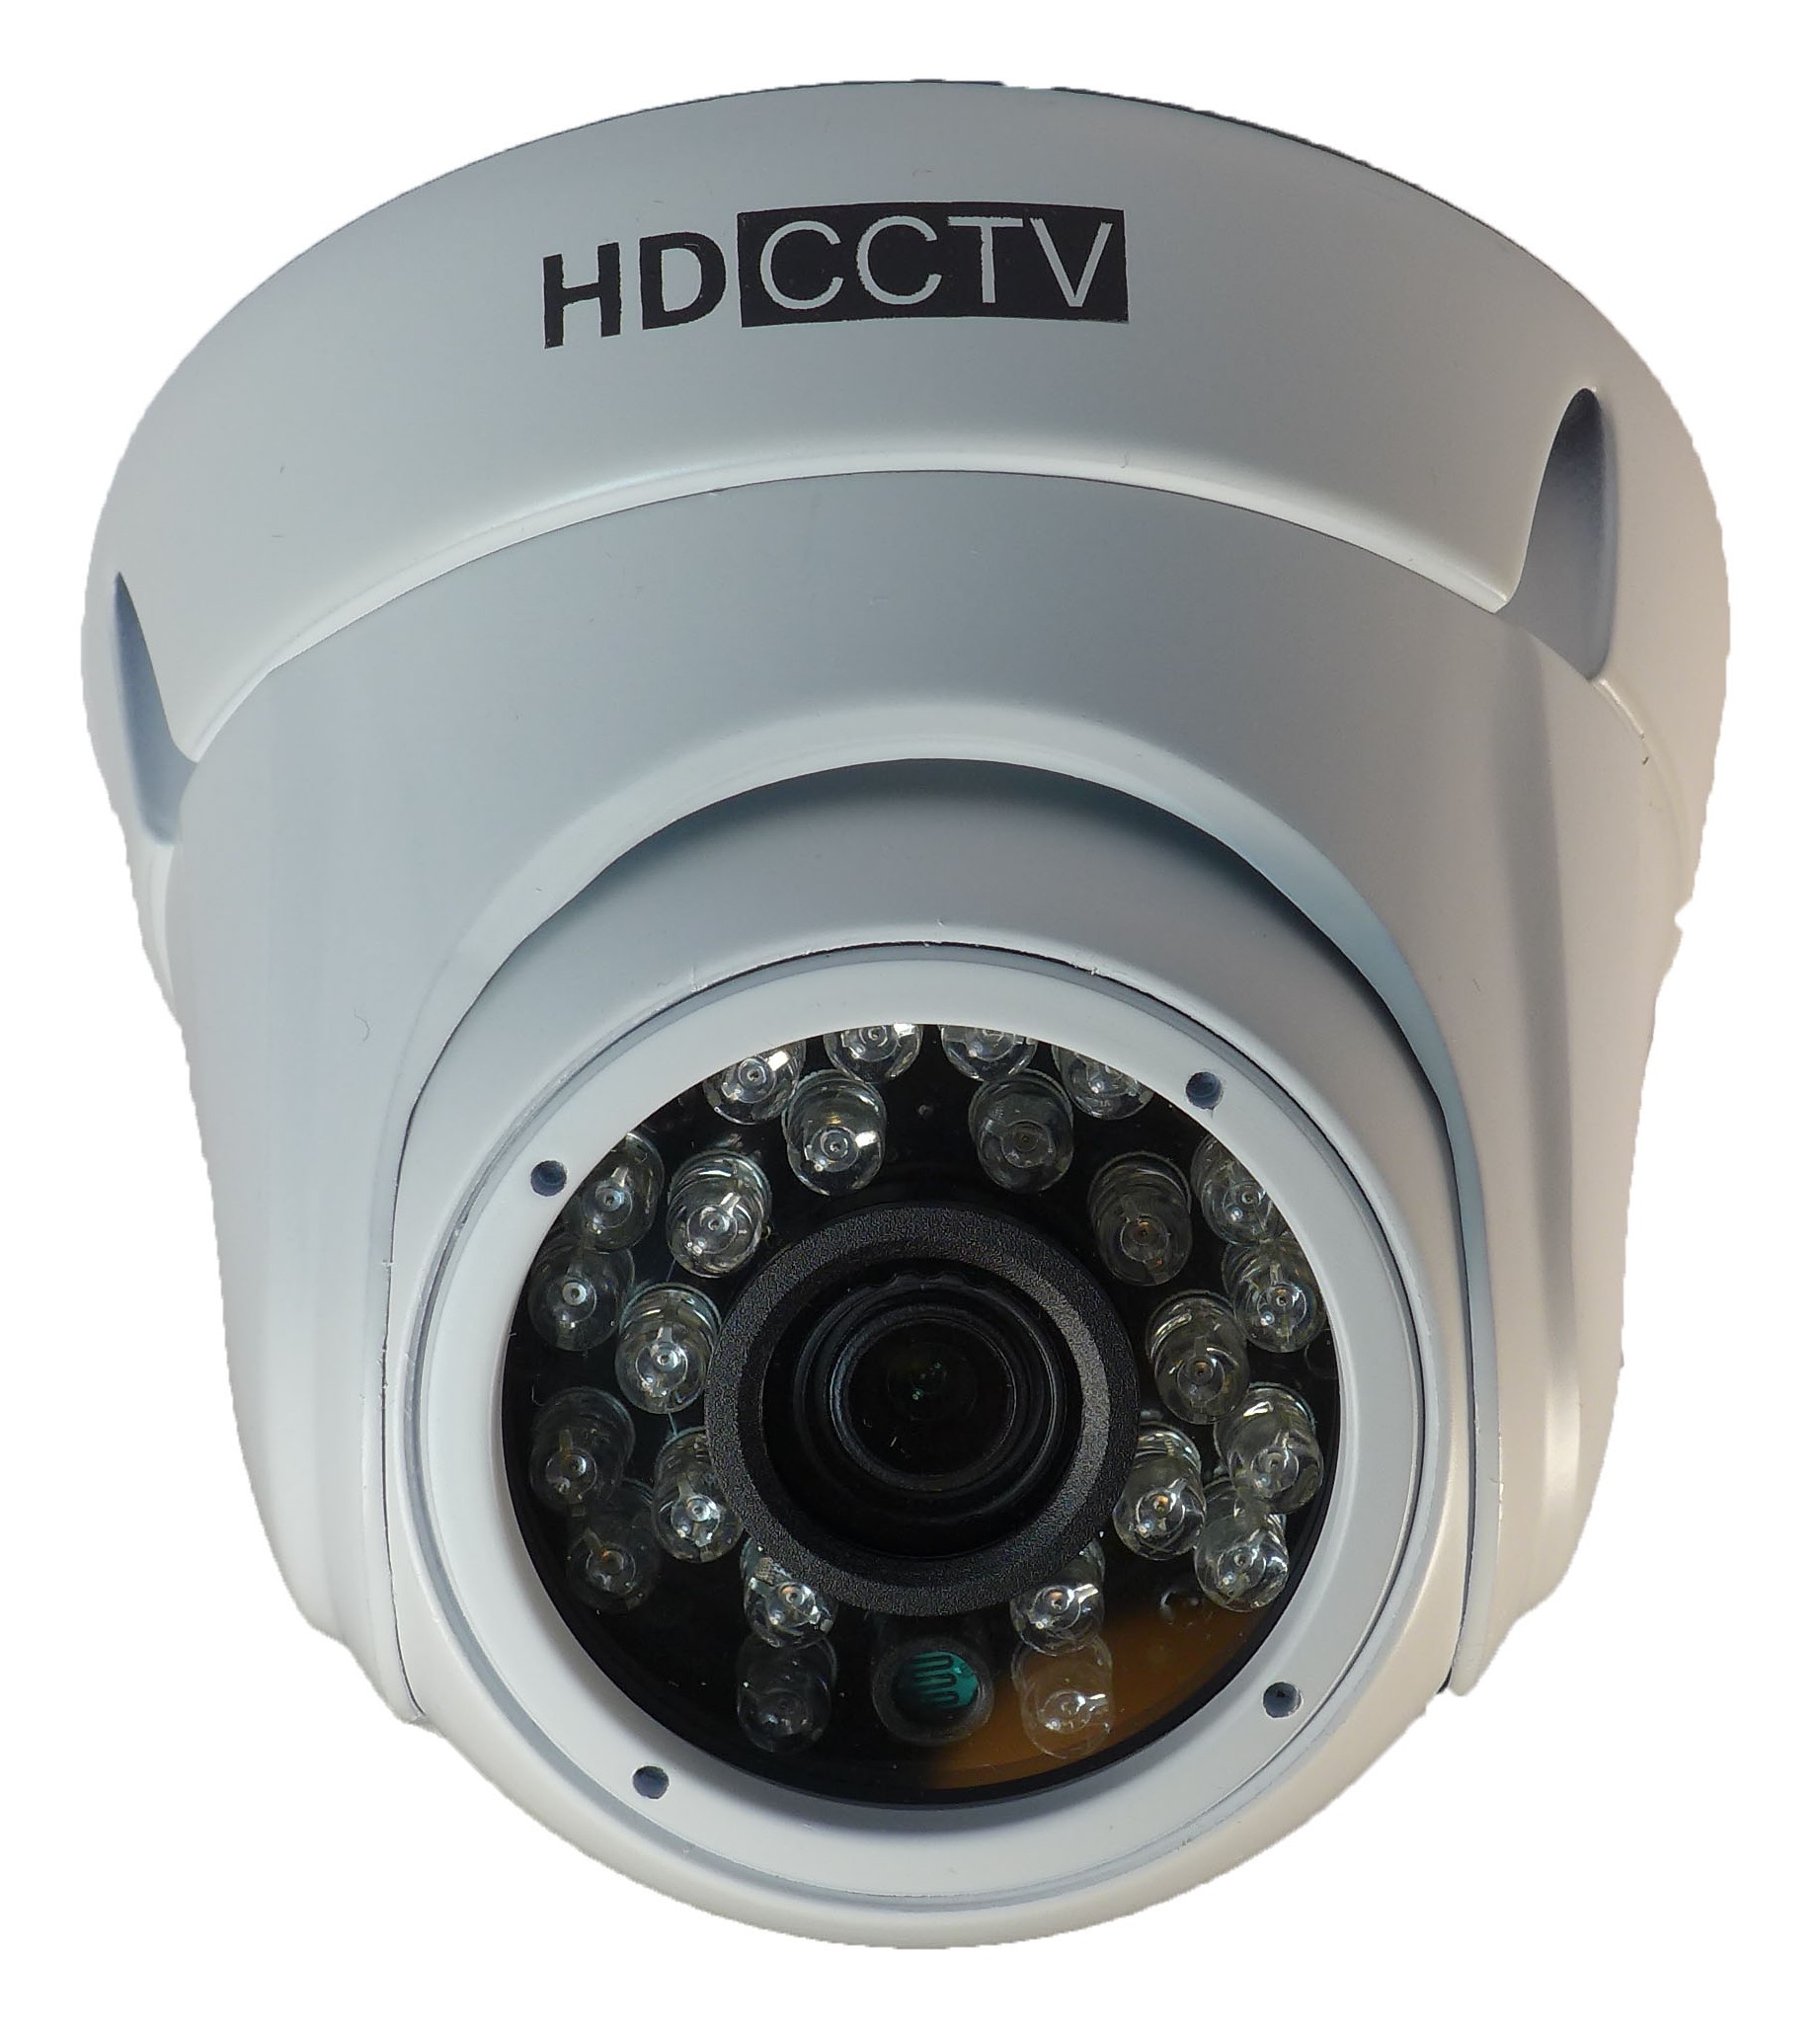 Biztonsági kamera OAHD-yyxx-12